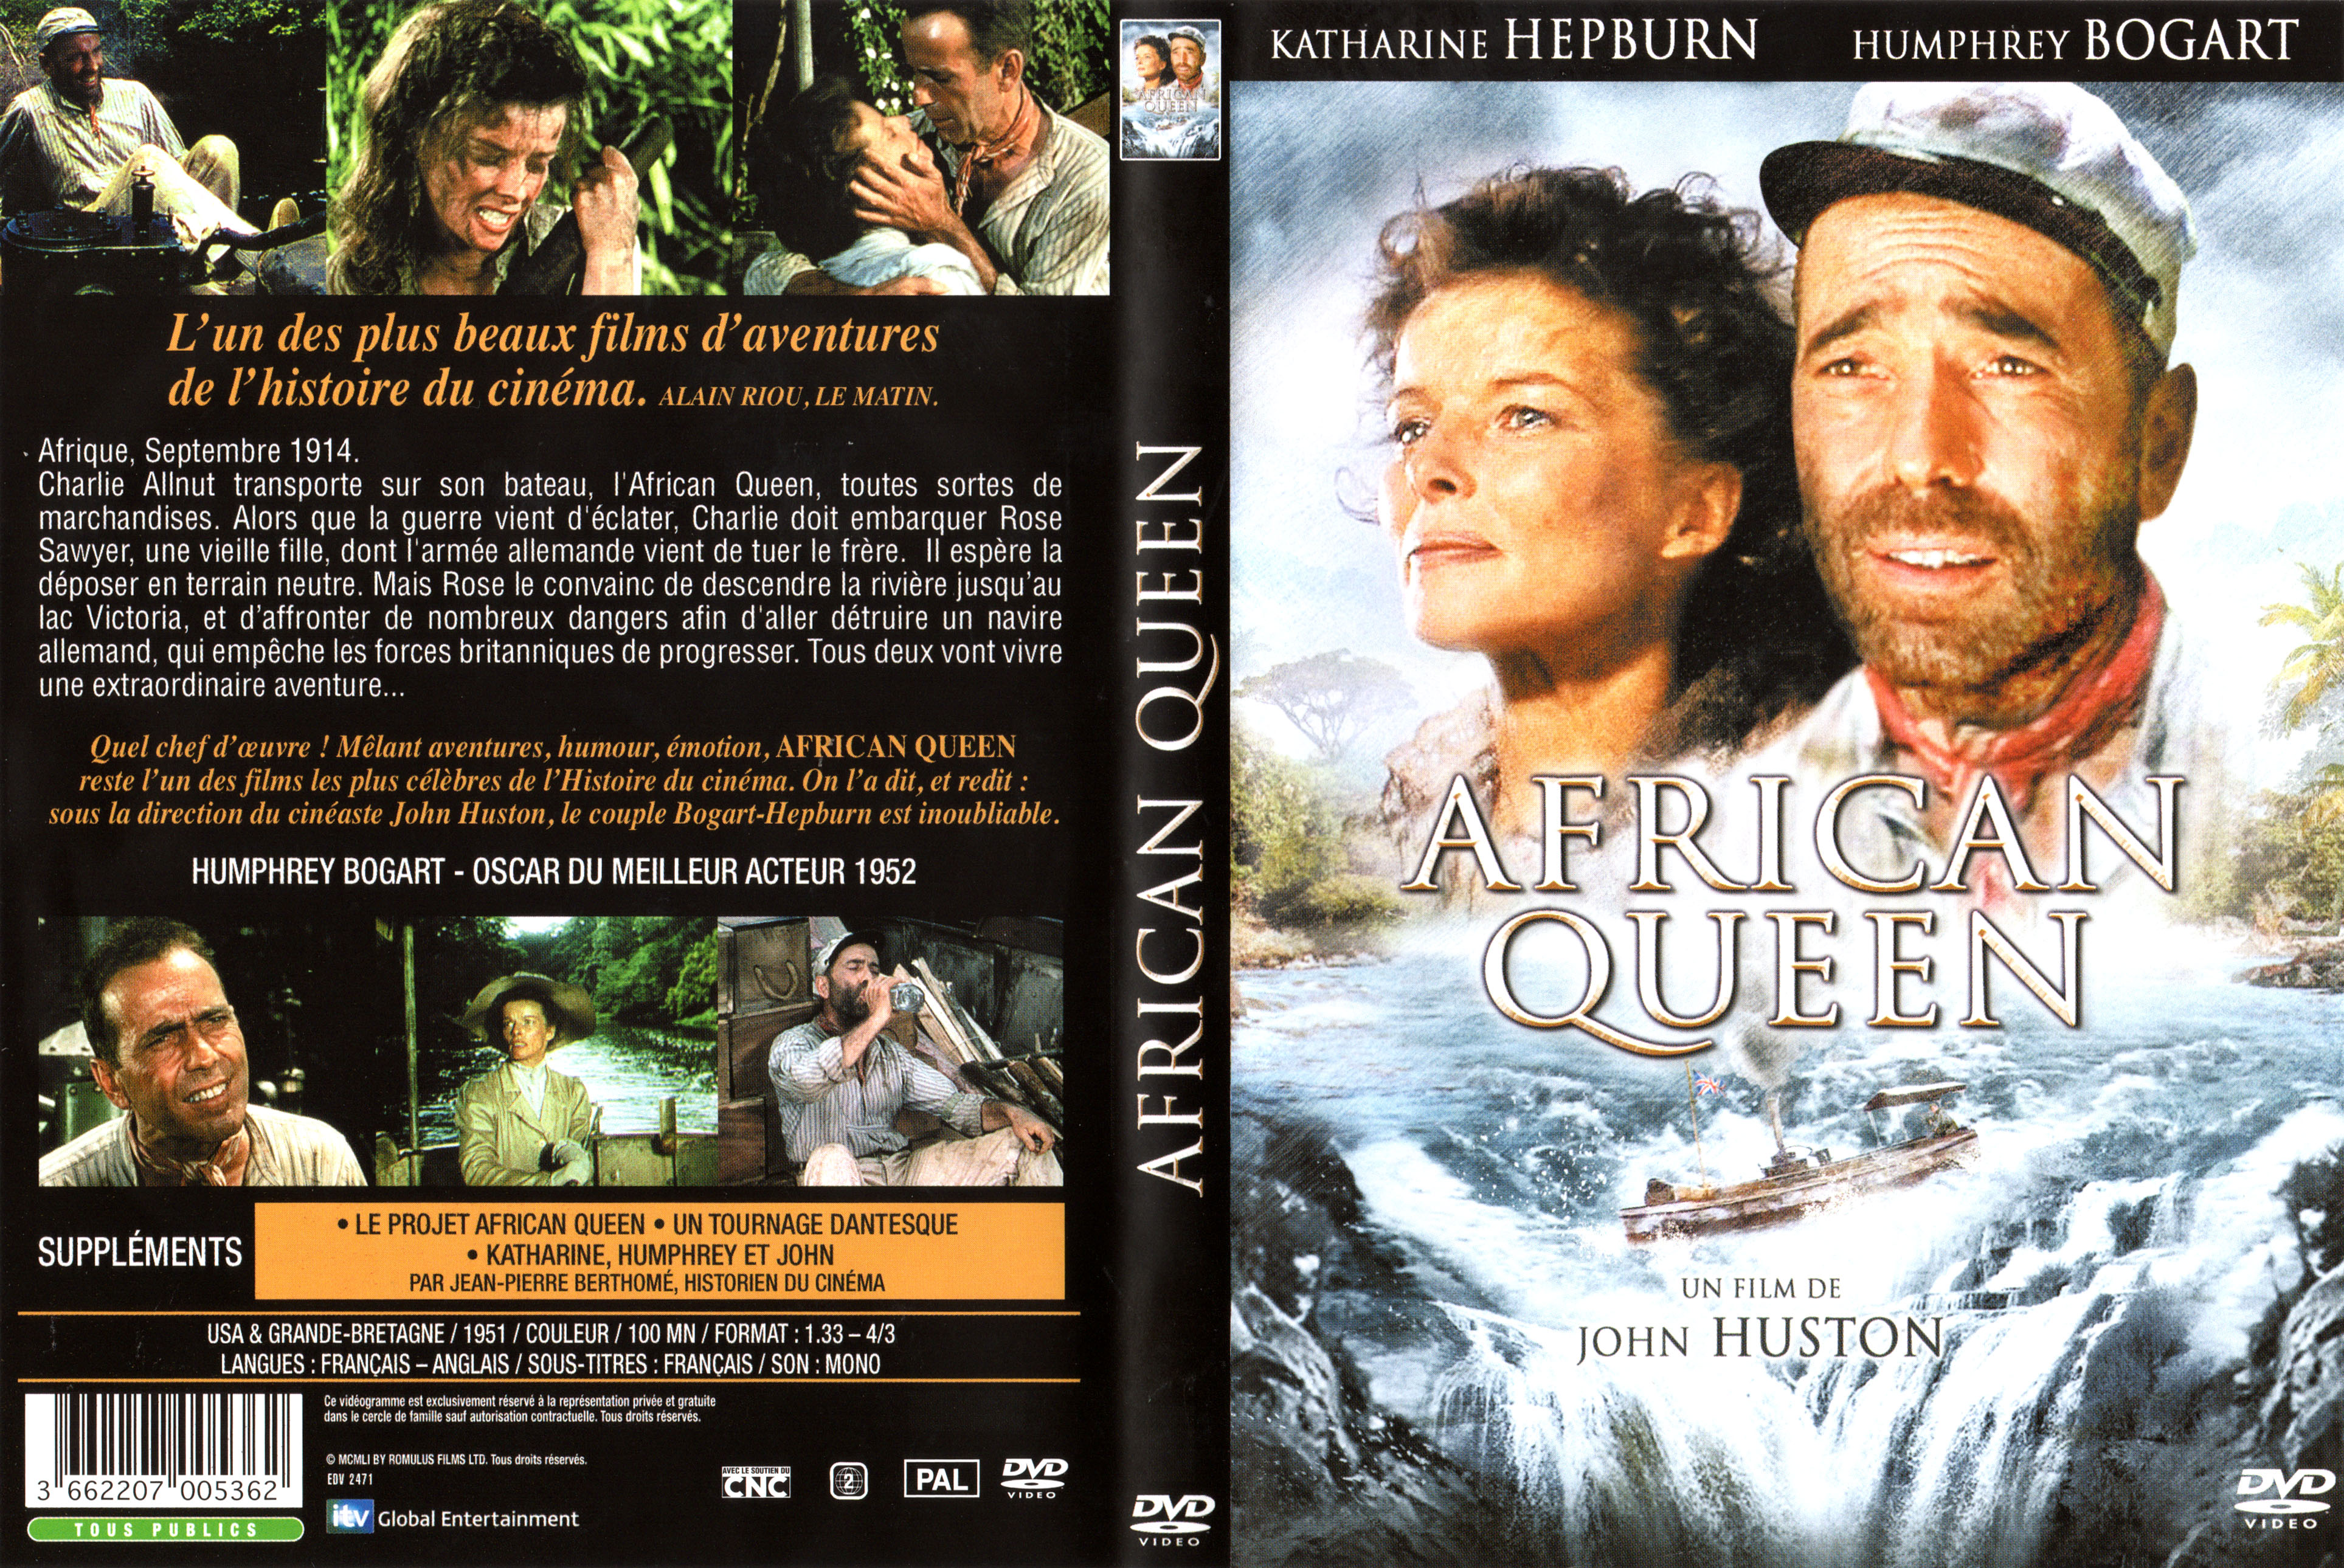 Jaquette DVD African Queen v3